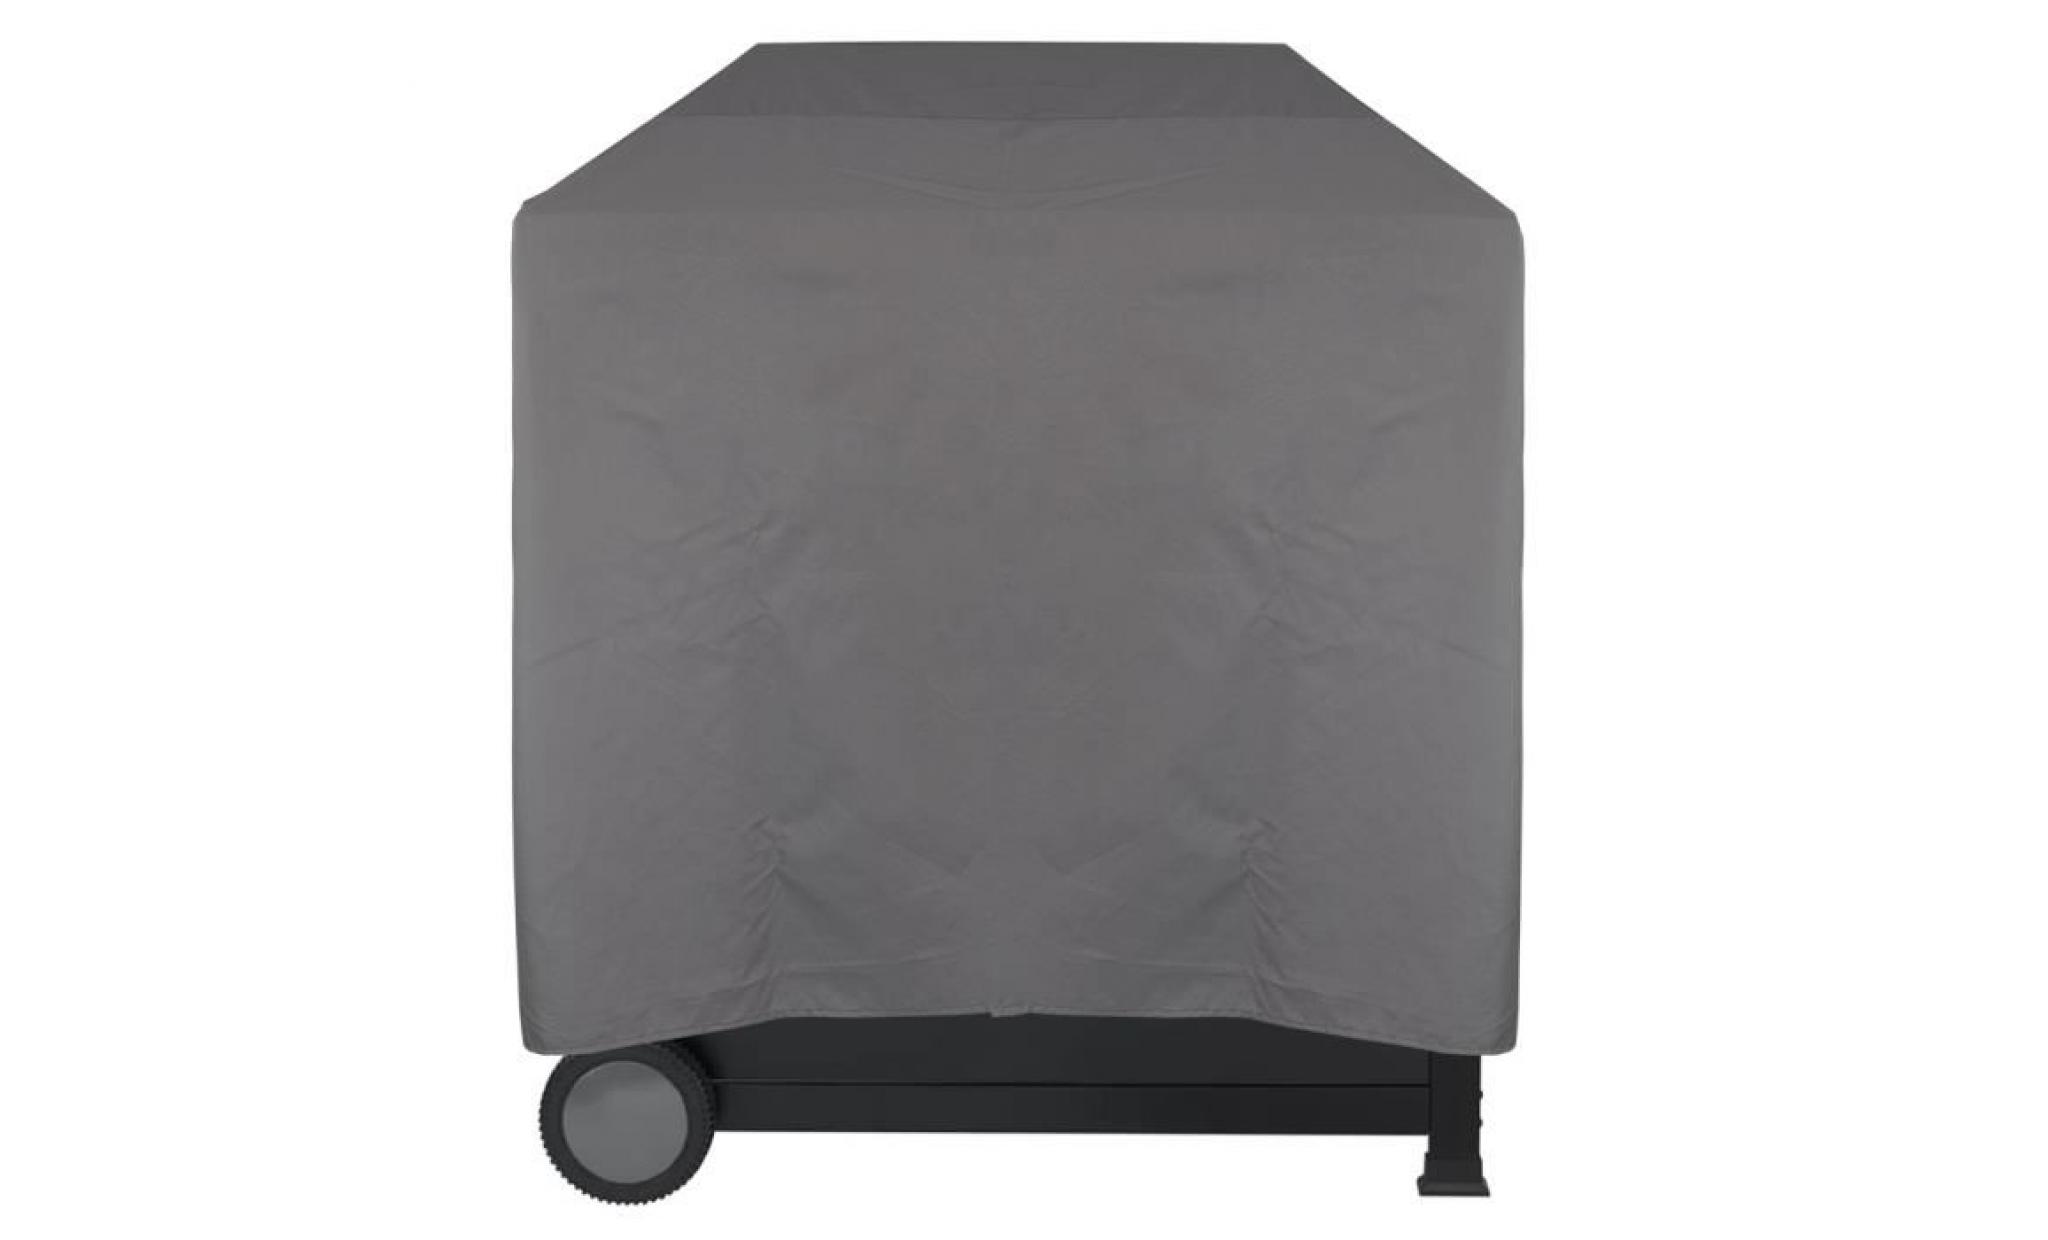 housse pour barbecue imperméable lounge gris, m 78 x 58 x 78 cm   protège contre la pluie, la saleté et les rayons du soleil